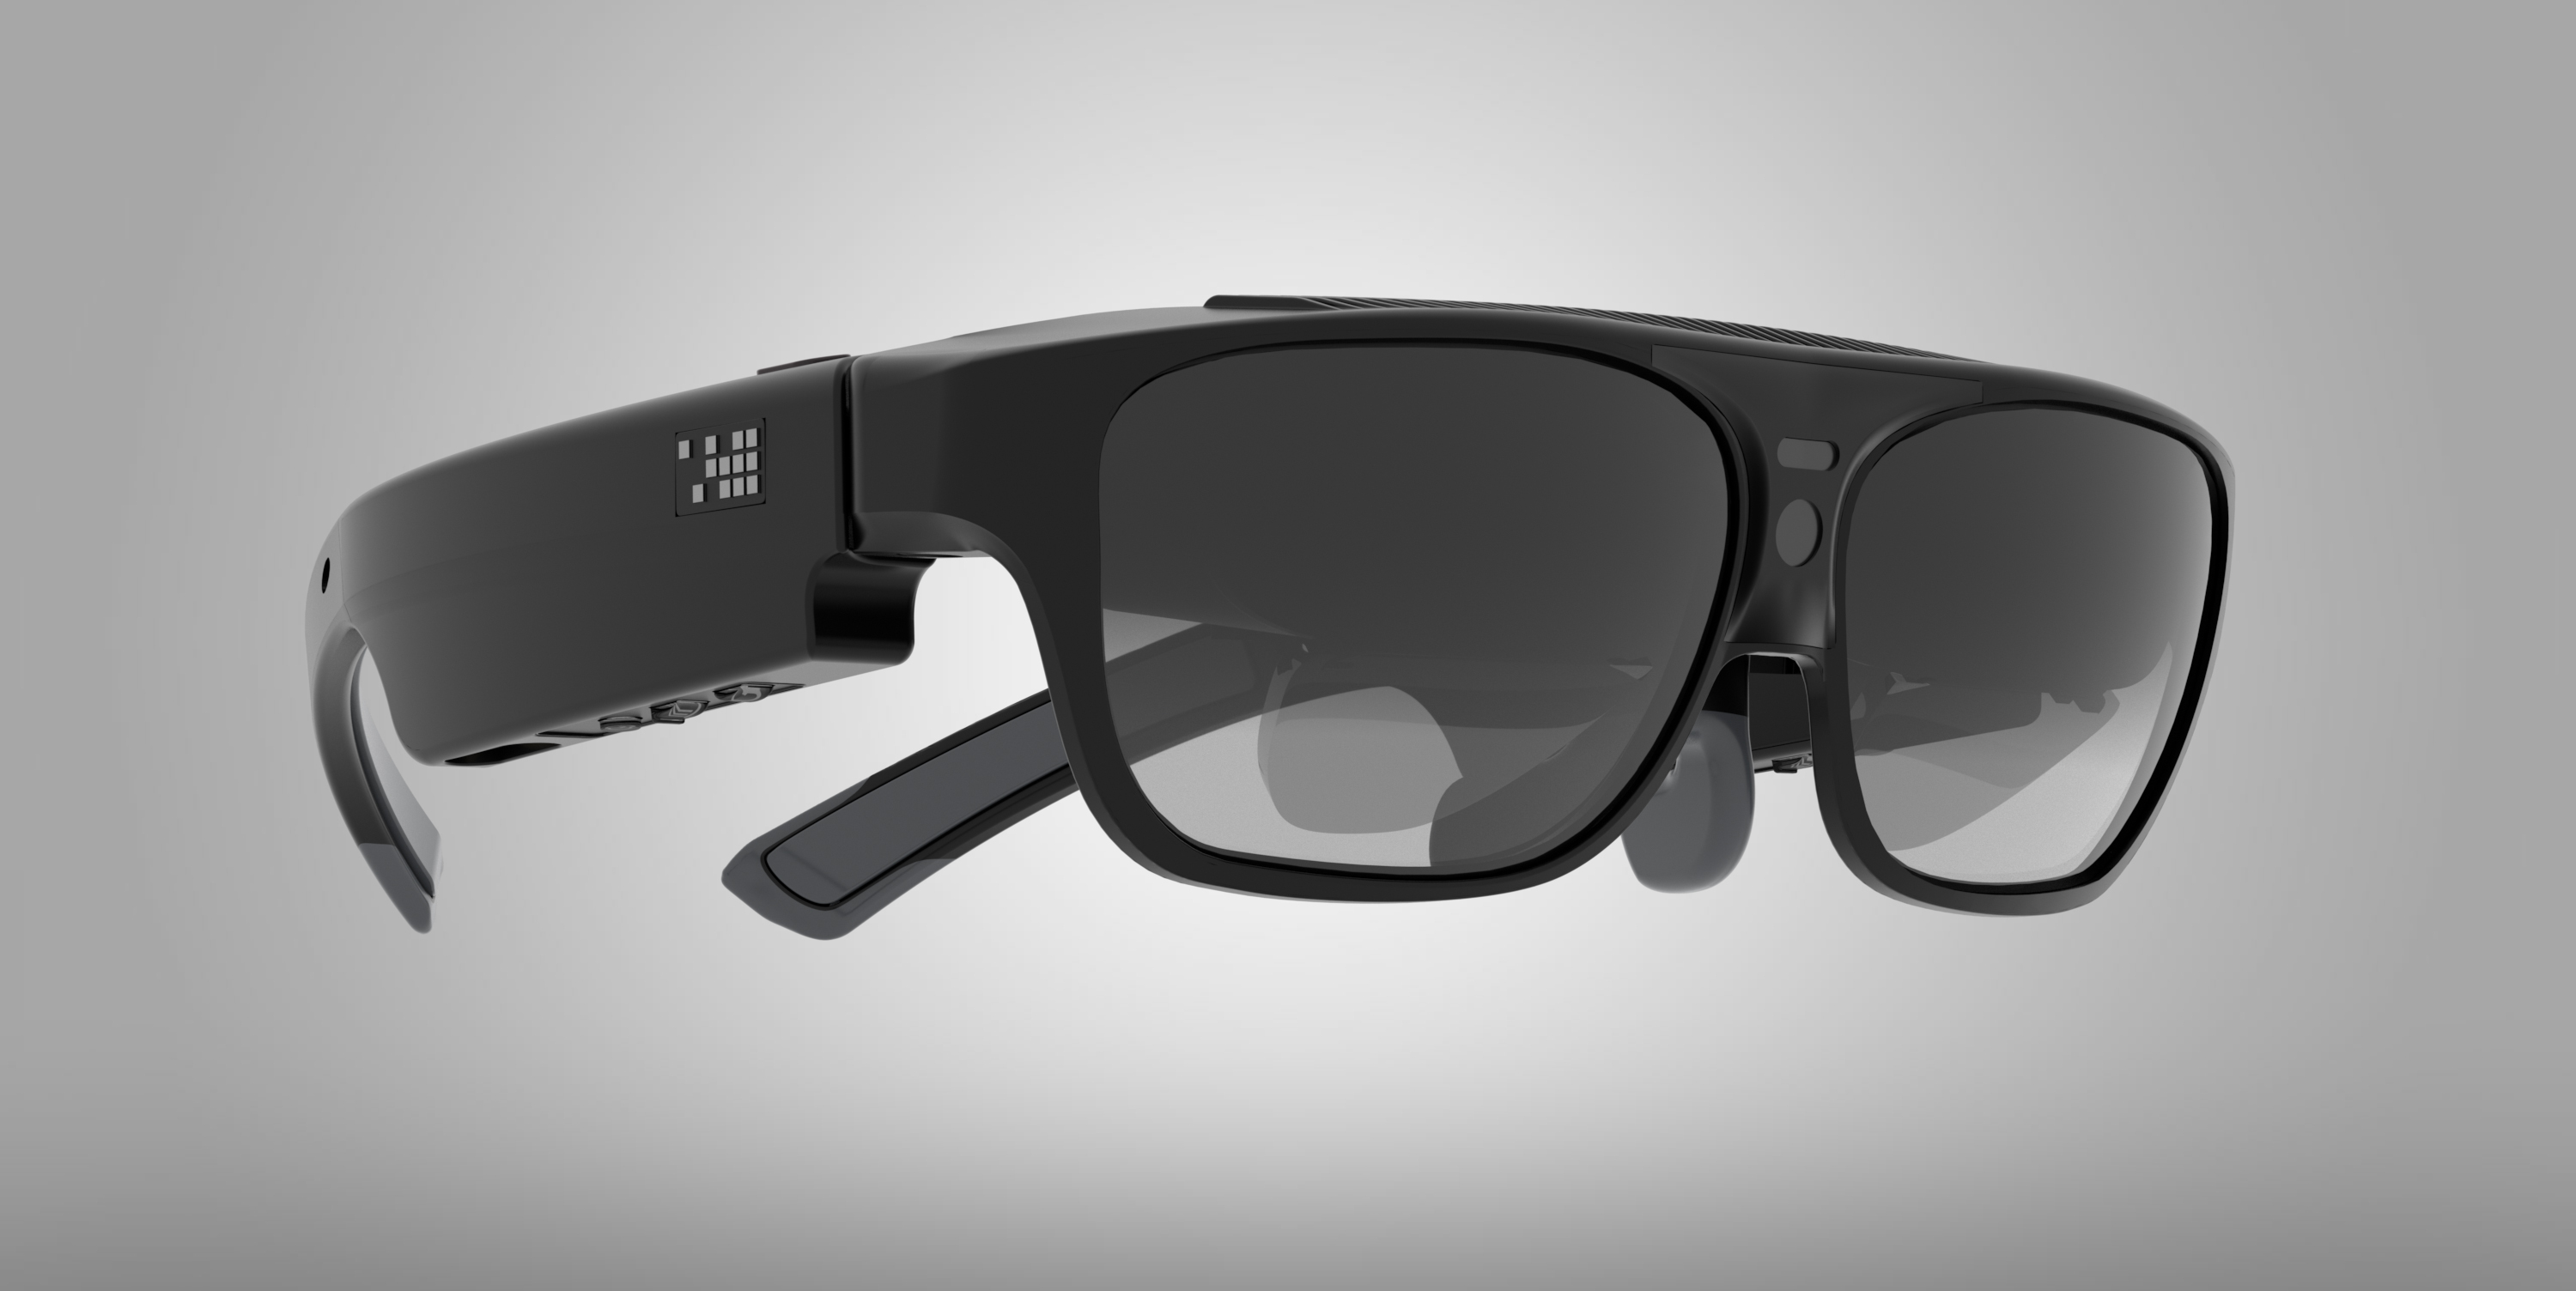 smart glasses 3d